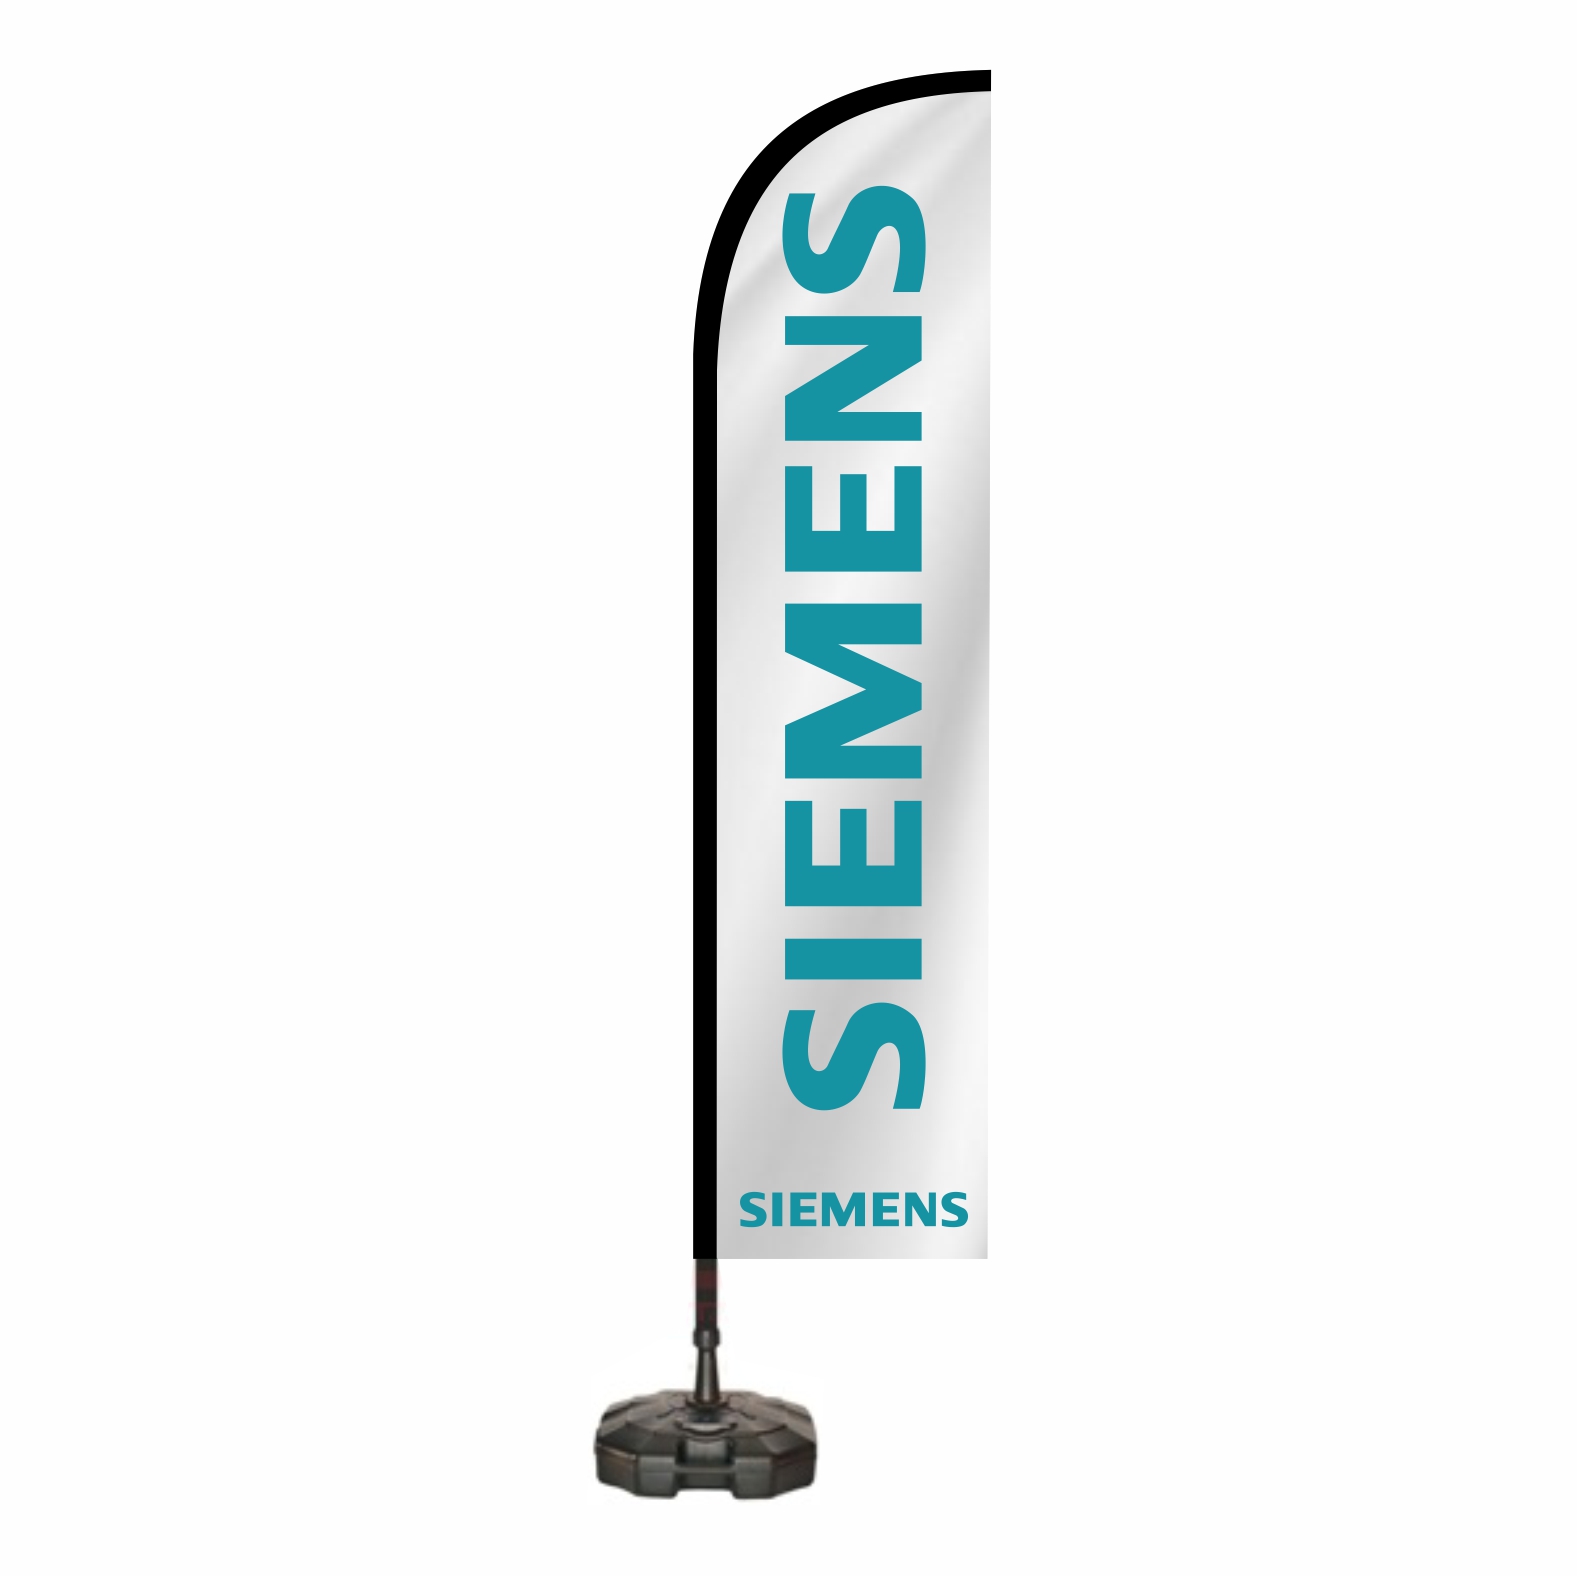 Siemens Oltal bayraklar